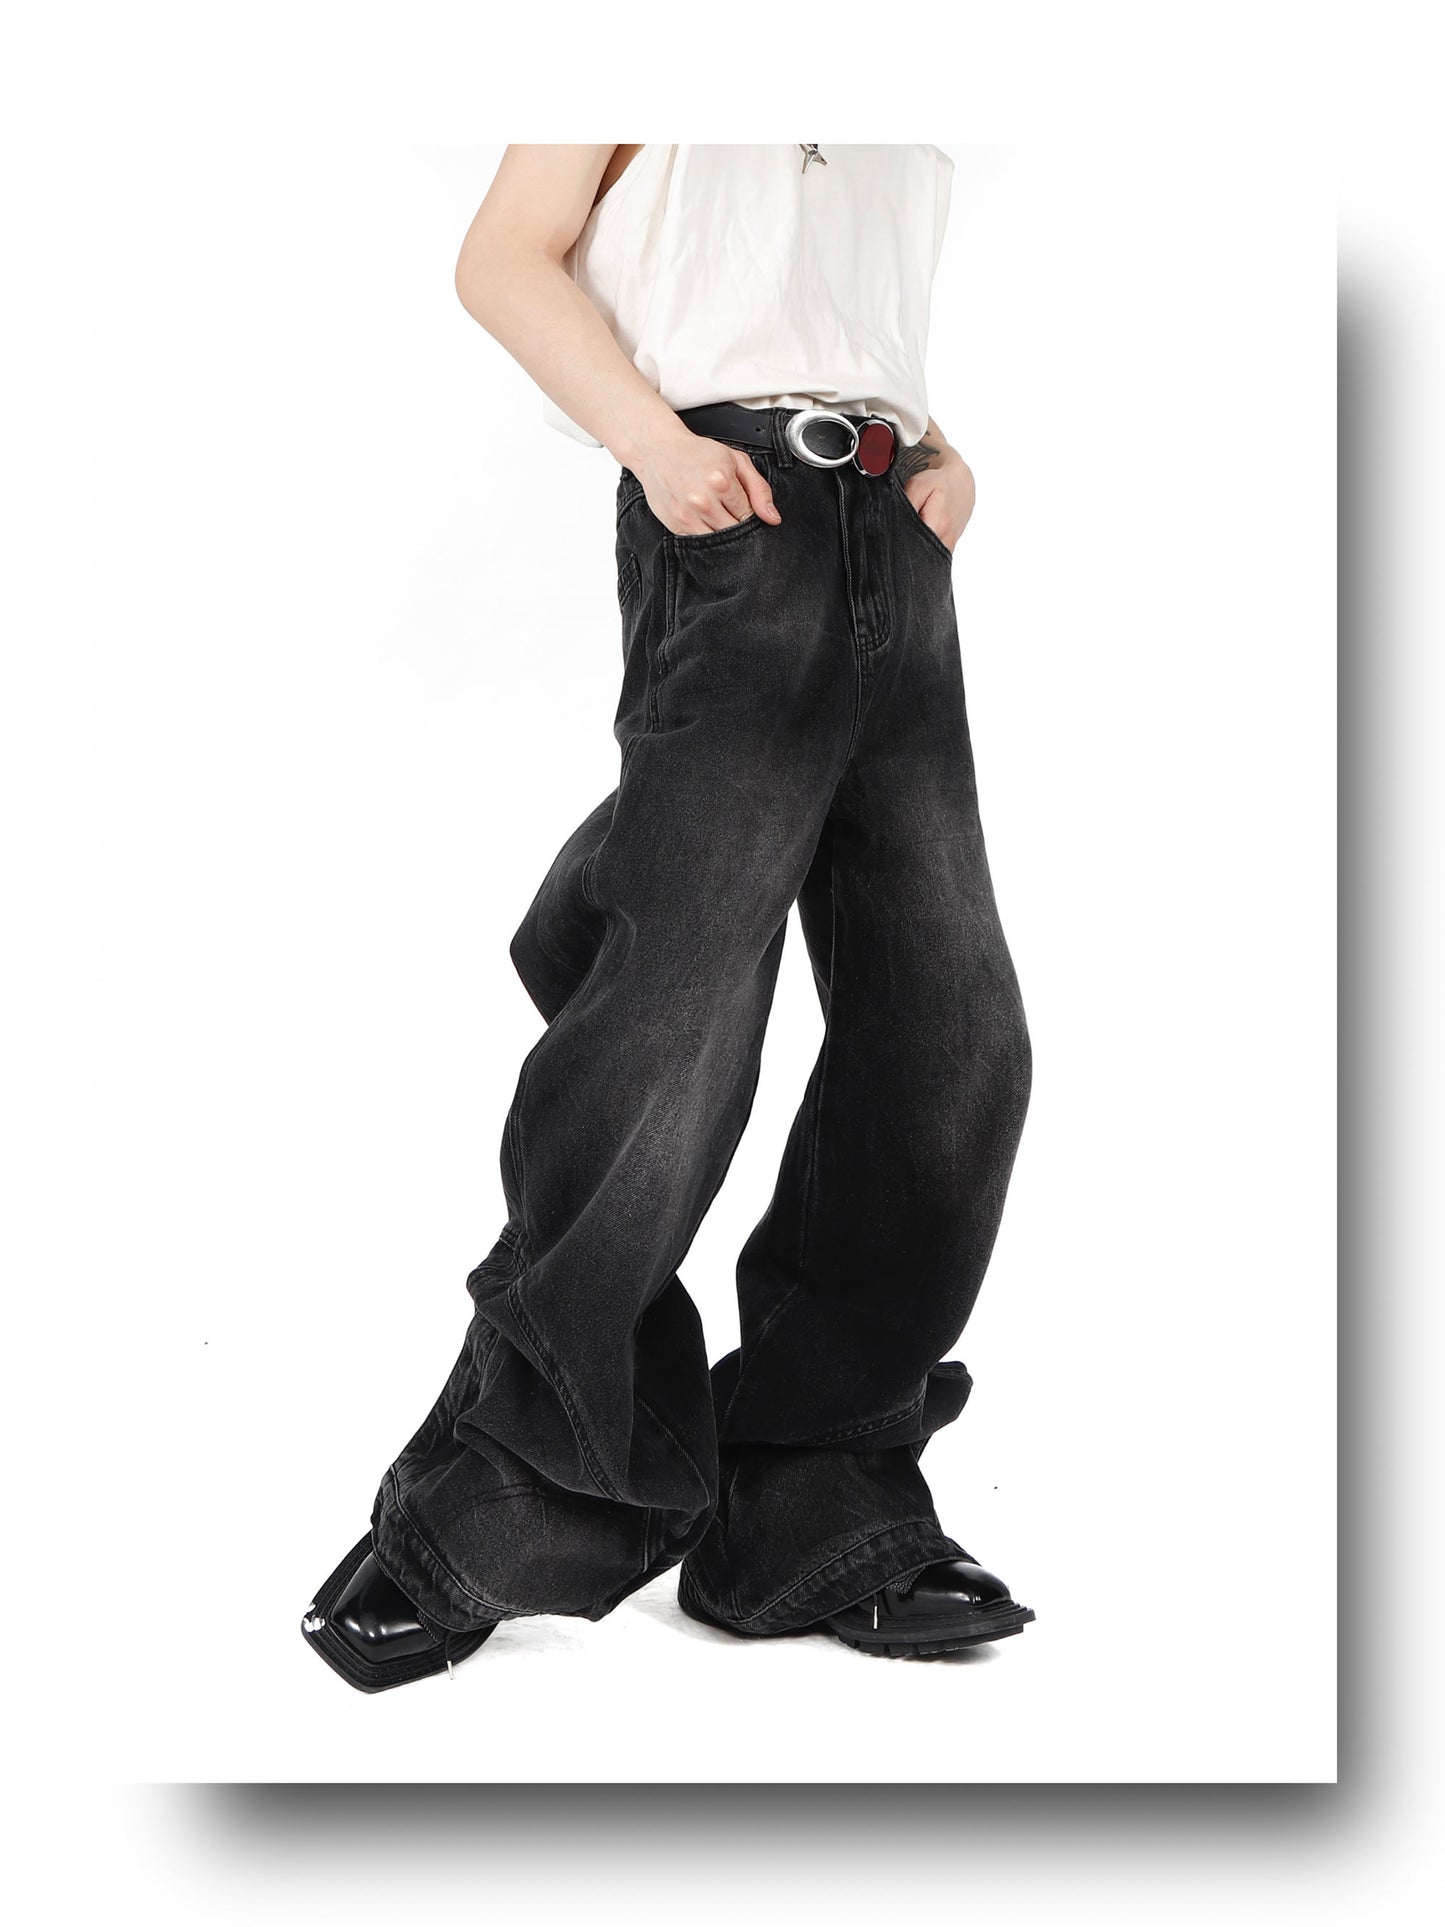 UNISEX Black Denim Pants/Jeans | ARGUE CULTURE Collection [H179]